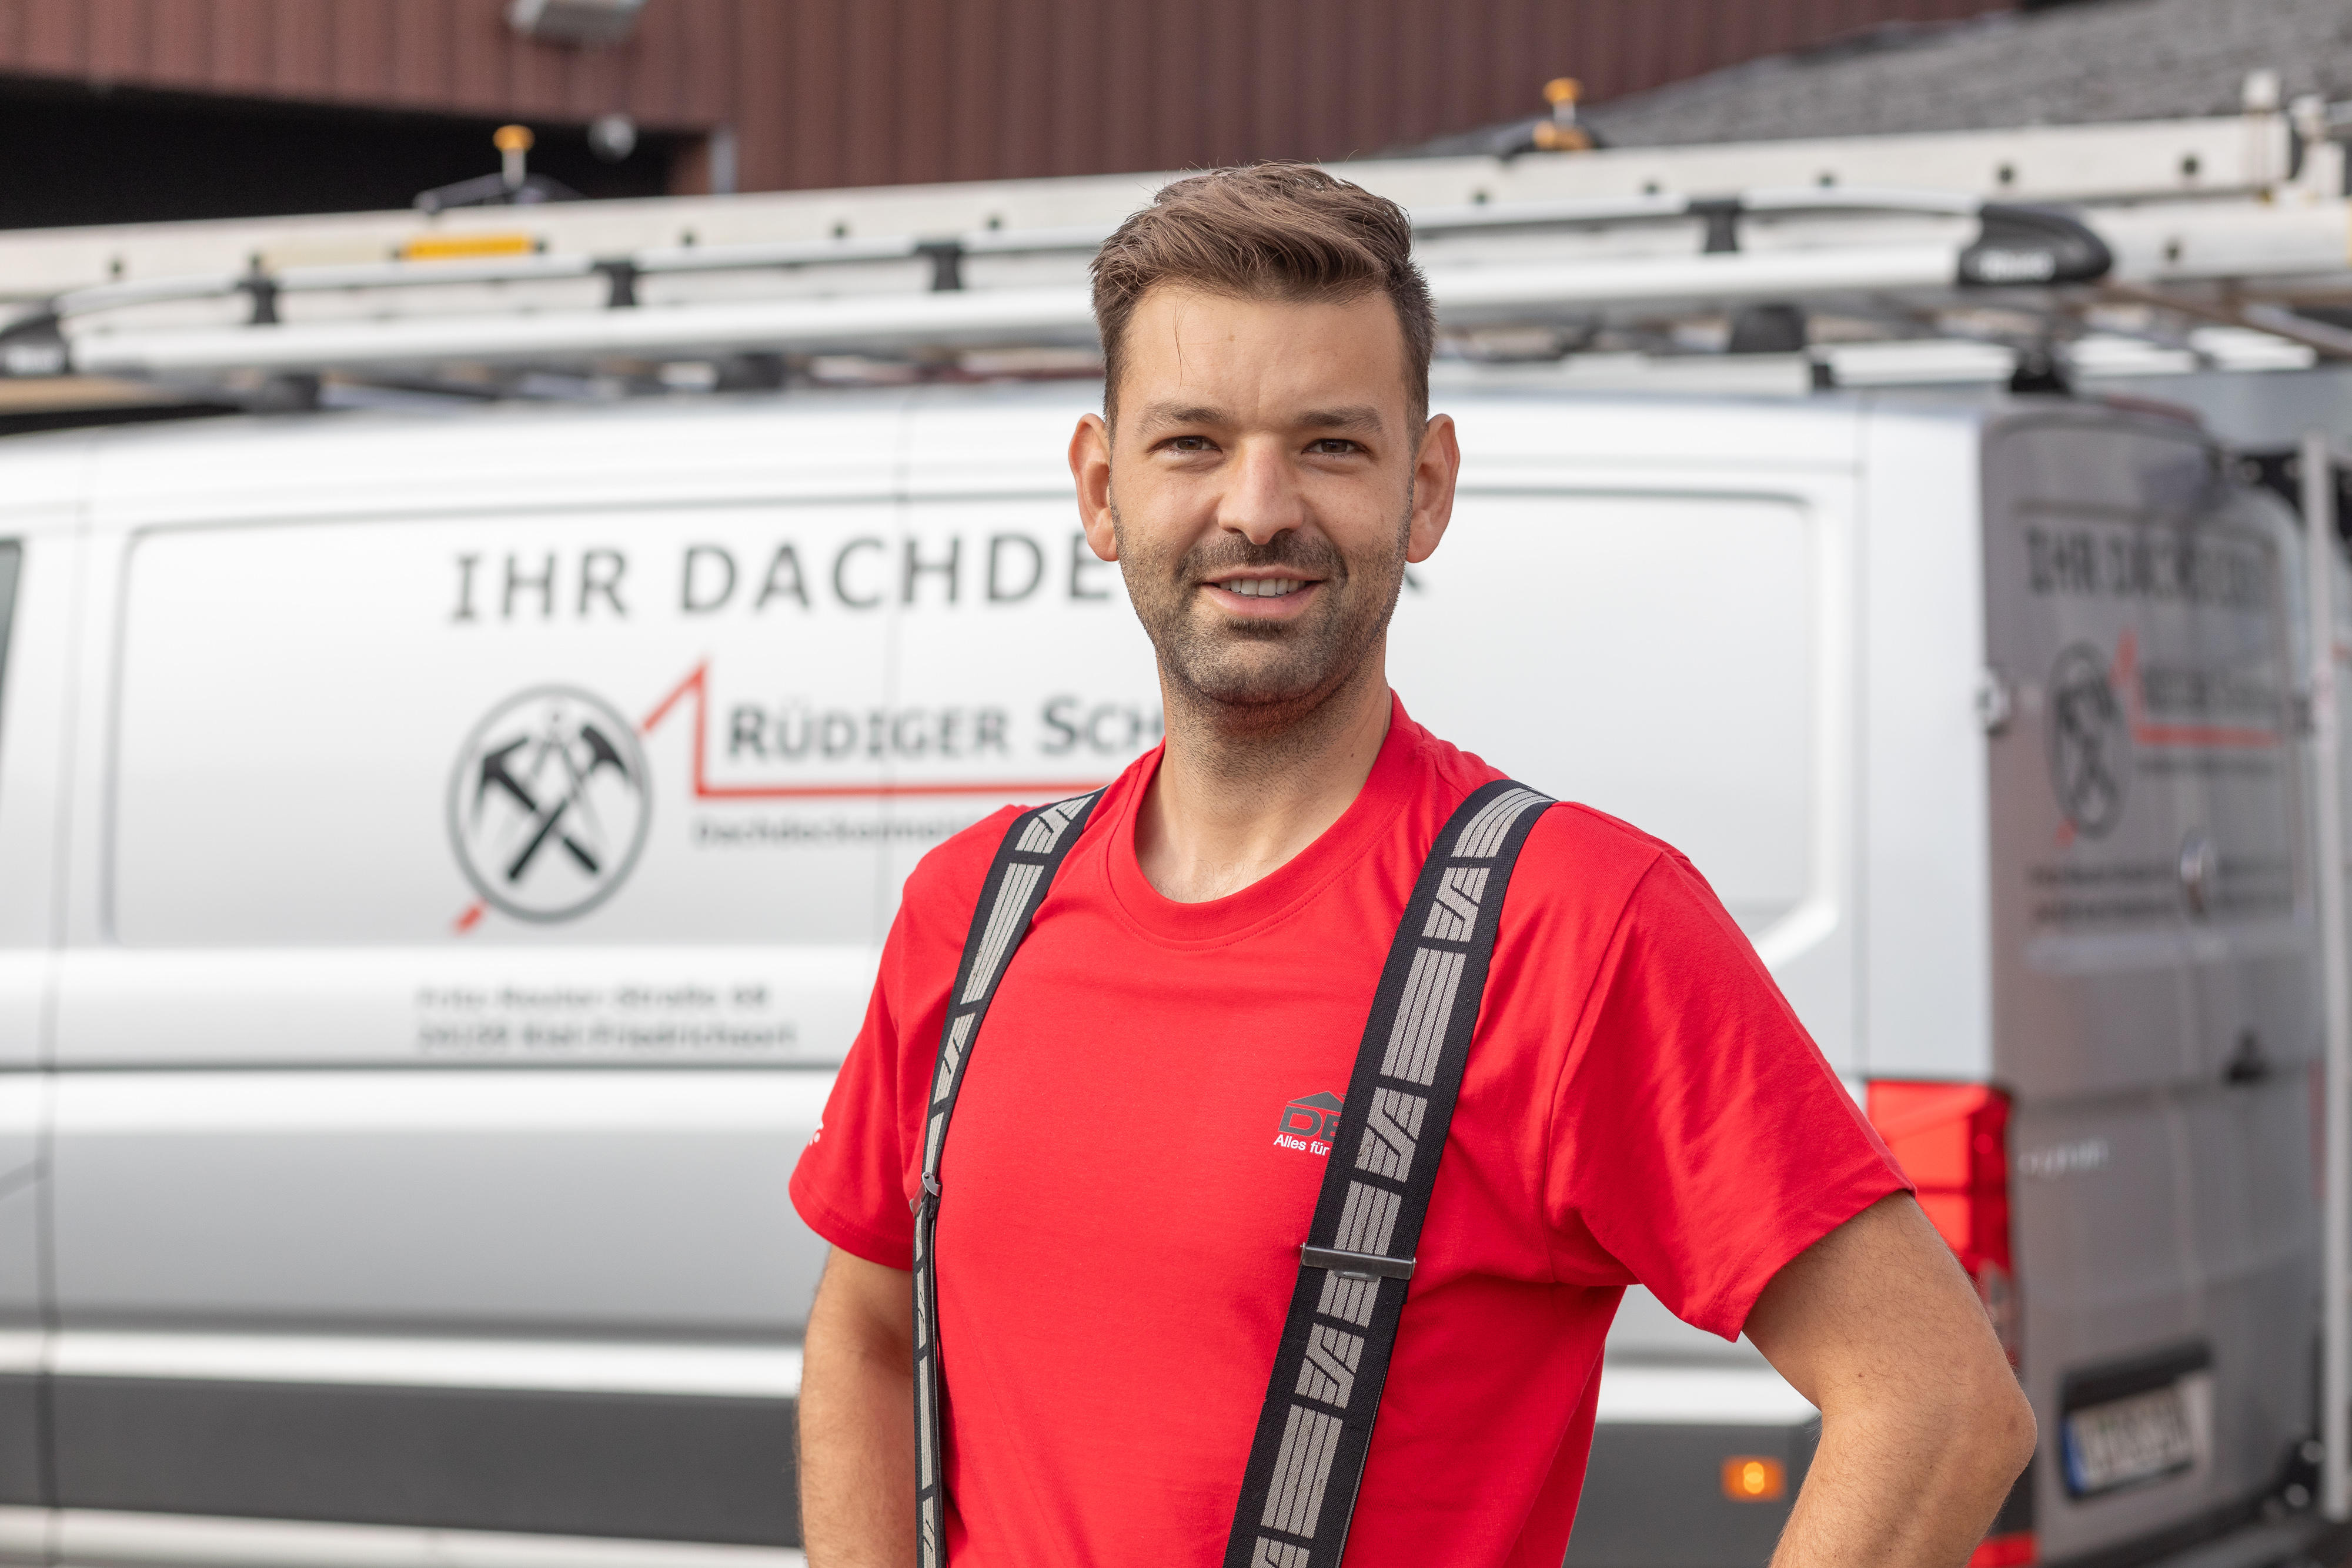 Bilder Rüdiger Schröder Dachdeckermeister & Hochbautechniker GmbH